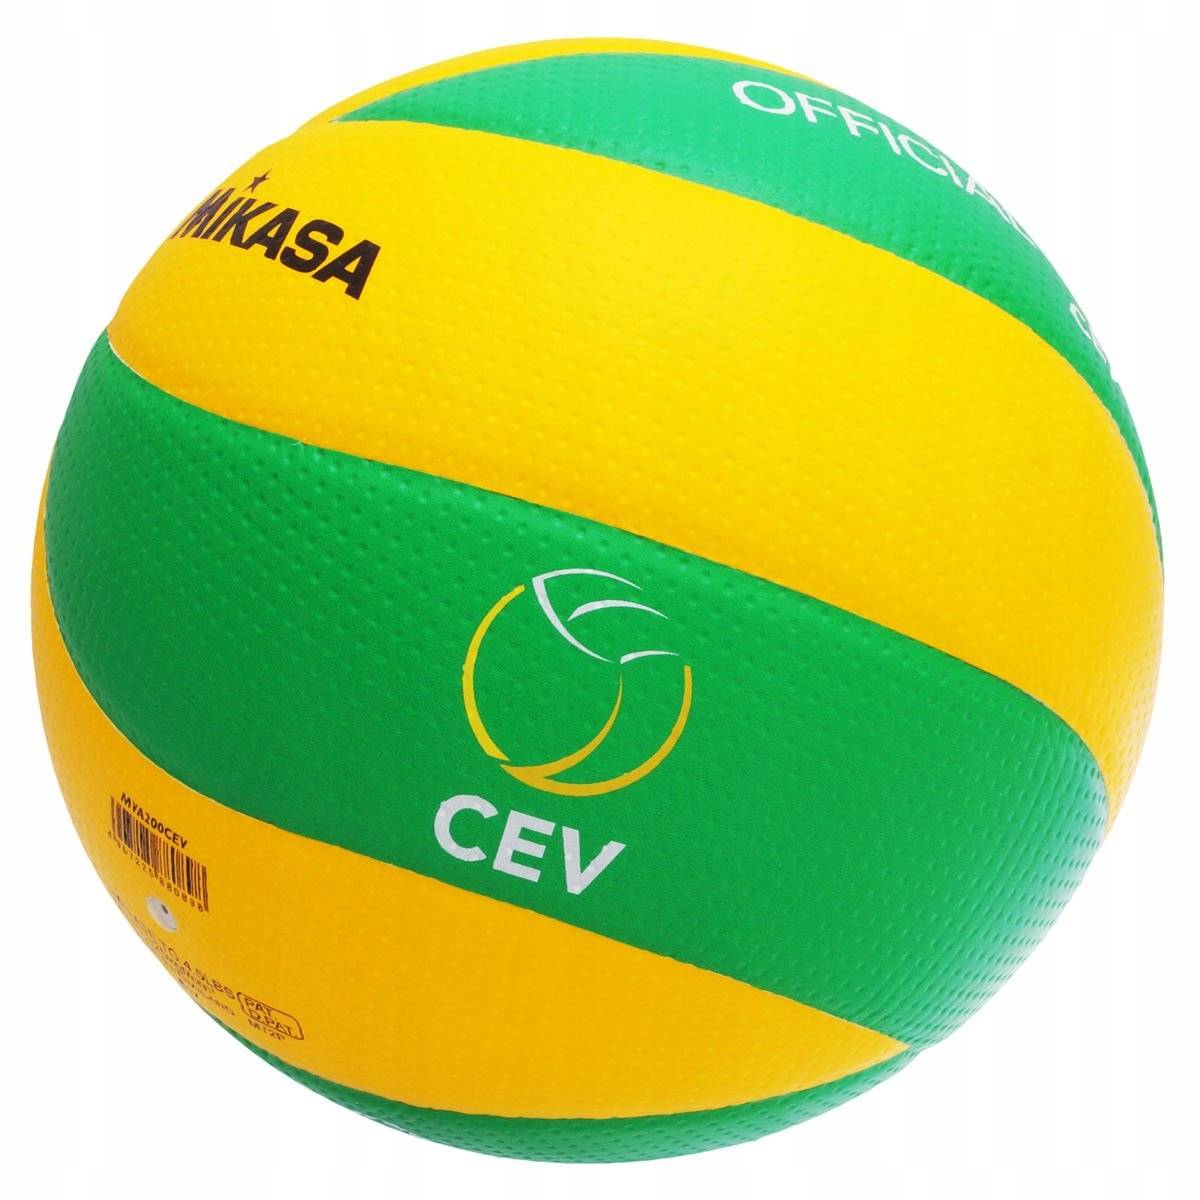 Как выбрать мяч для волейбола ребенку